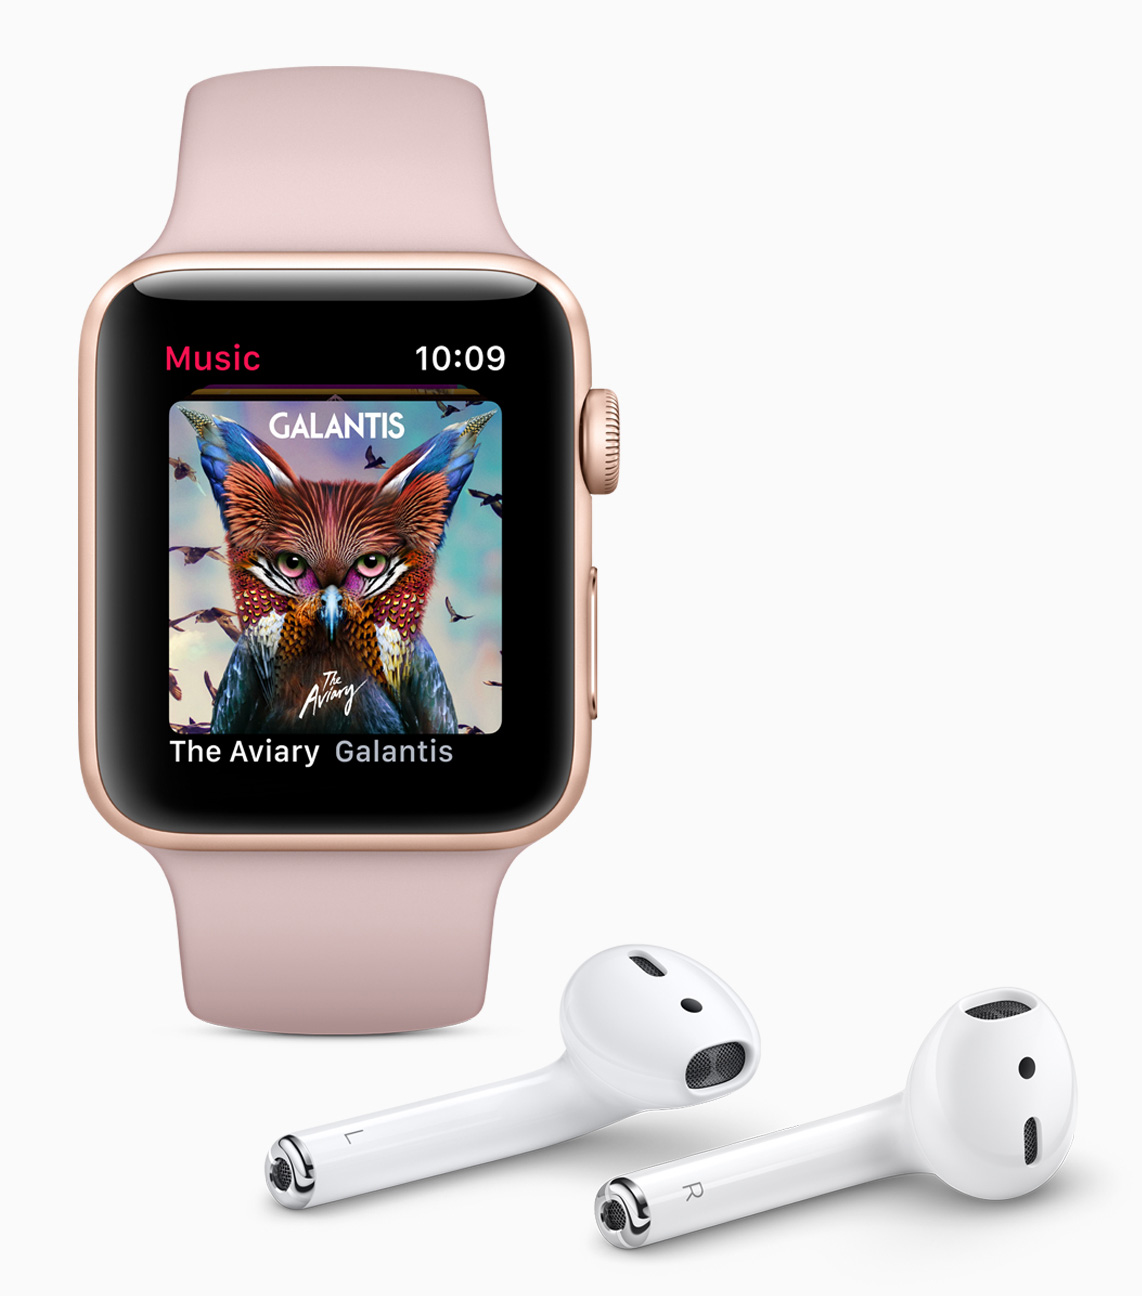 Neue Apple Watch und Apple TV - Bildergalerie Bild 7